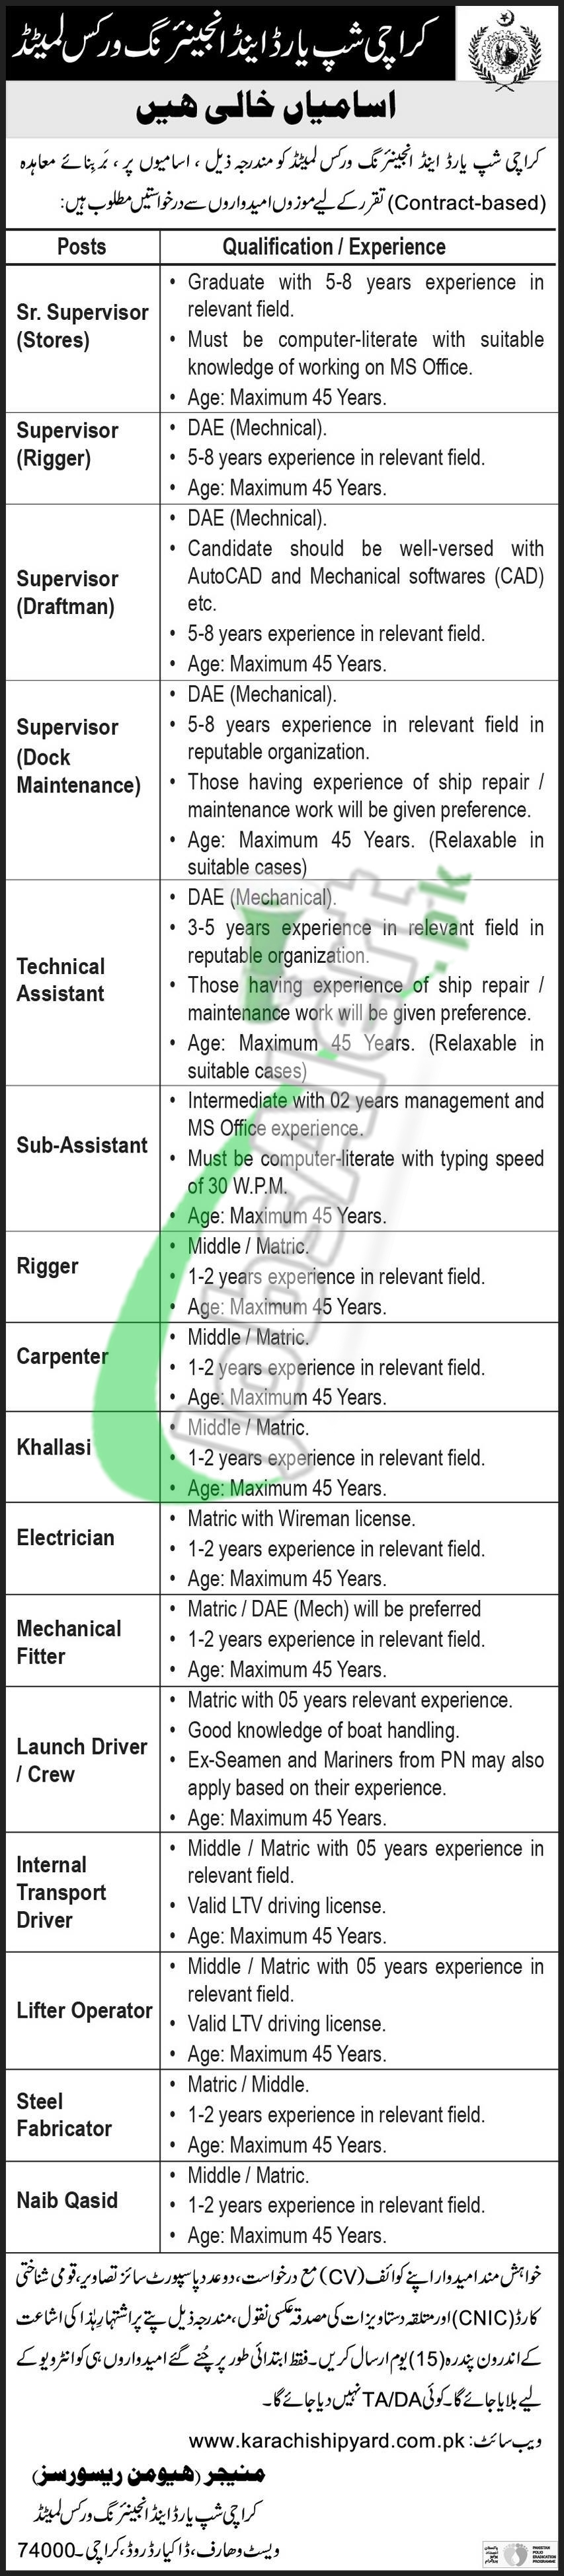 Karachi Shipyard Jobs 2021